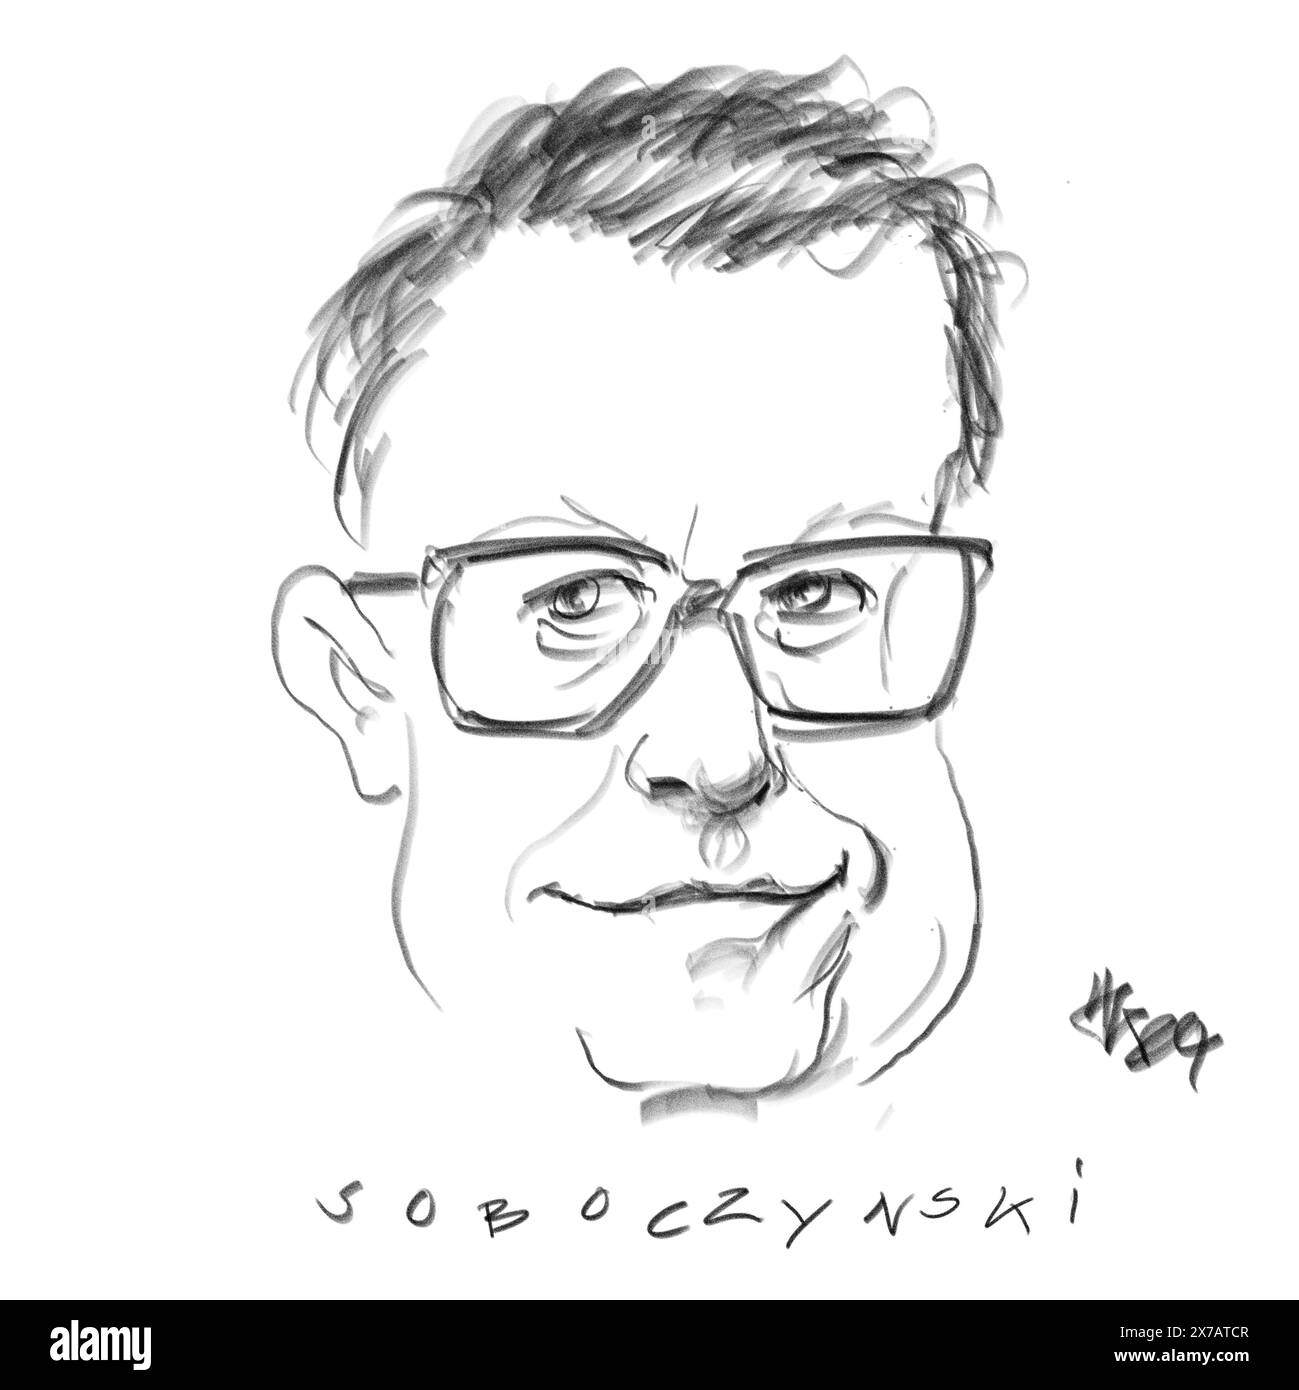 Portrait de l'auteur Soboczynski Banque D'Images